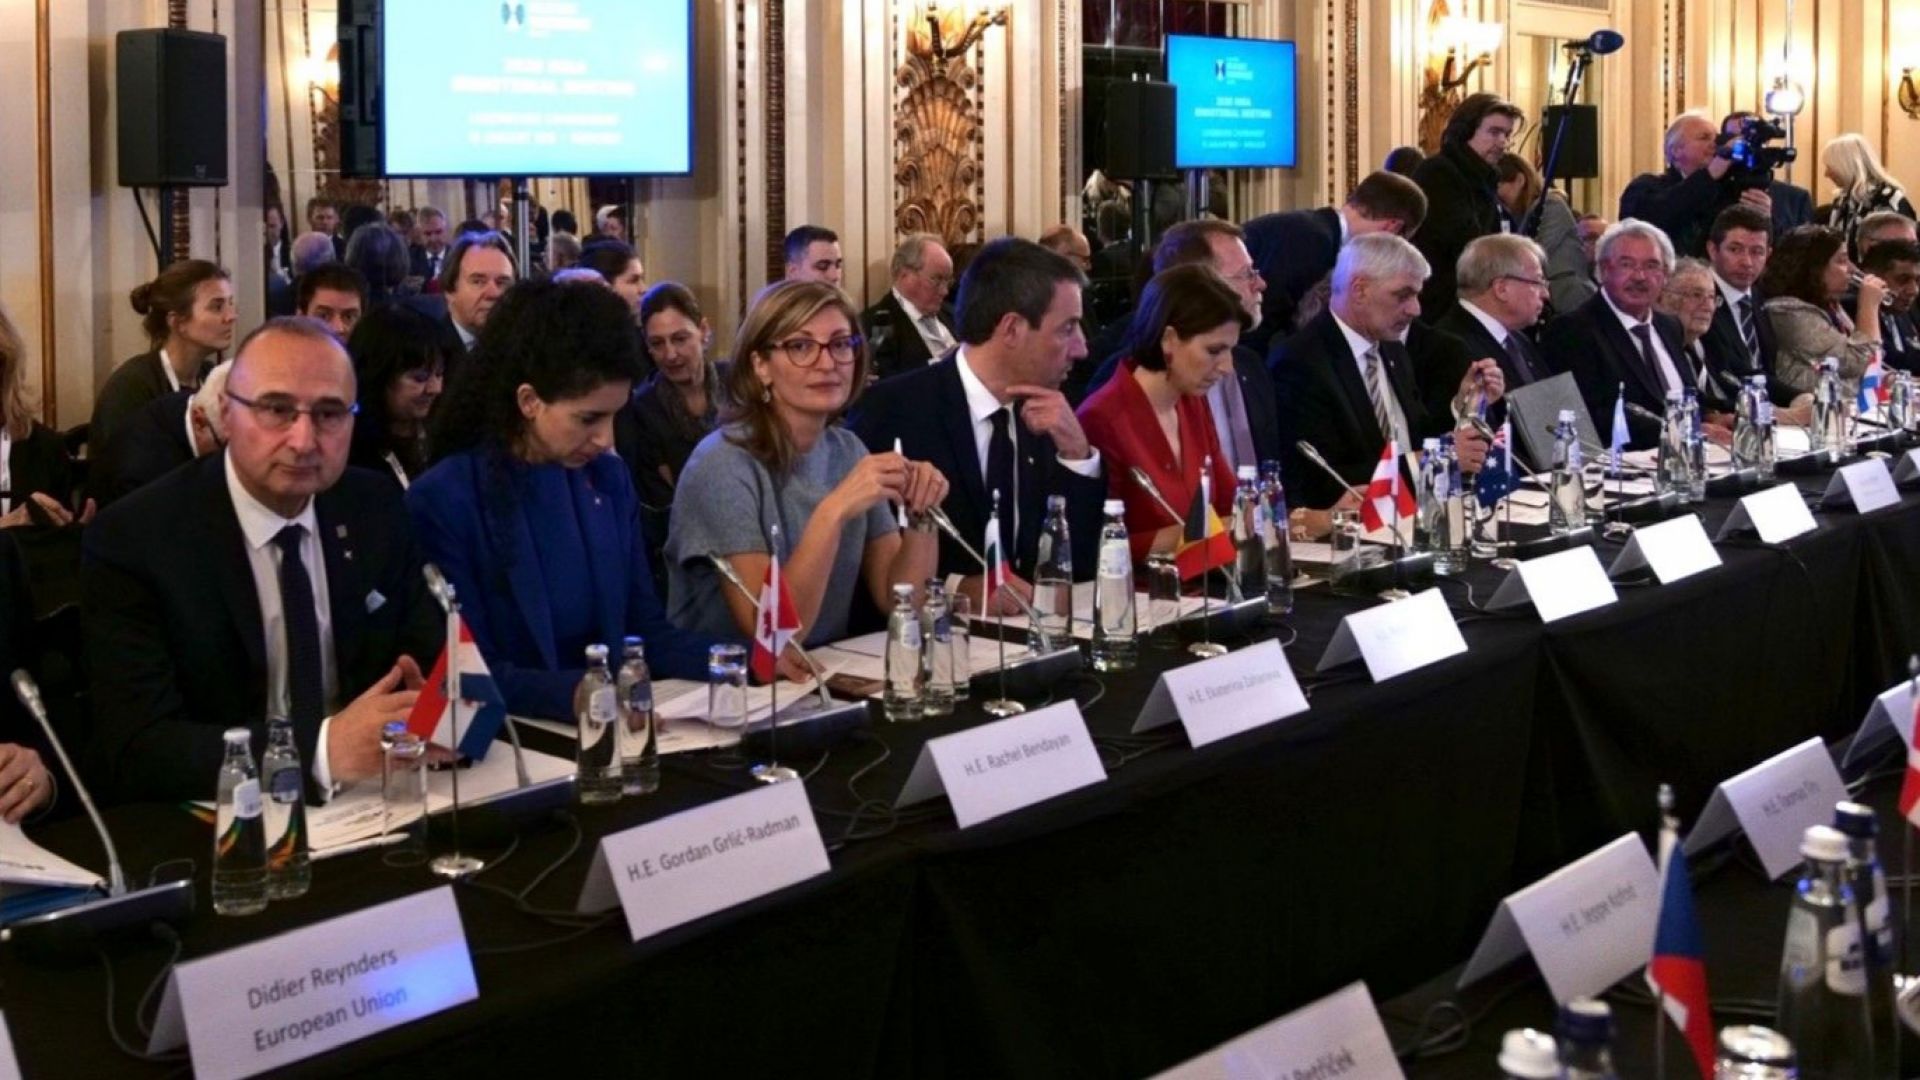 Външни министри от 35 страни сред които и България изразиха